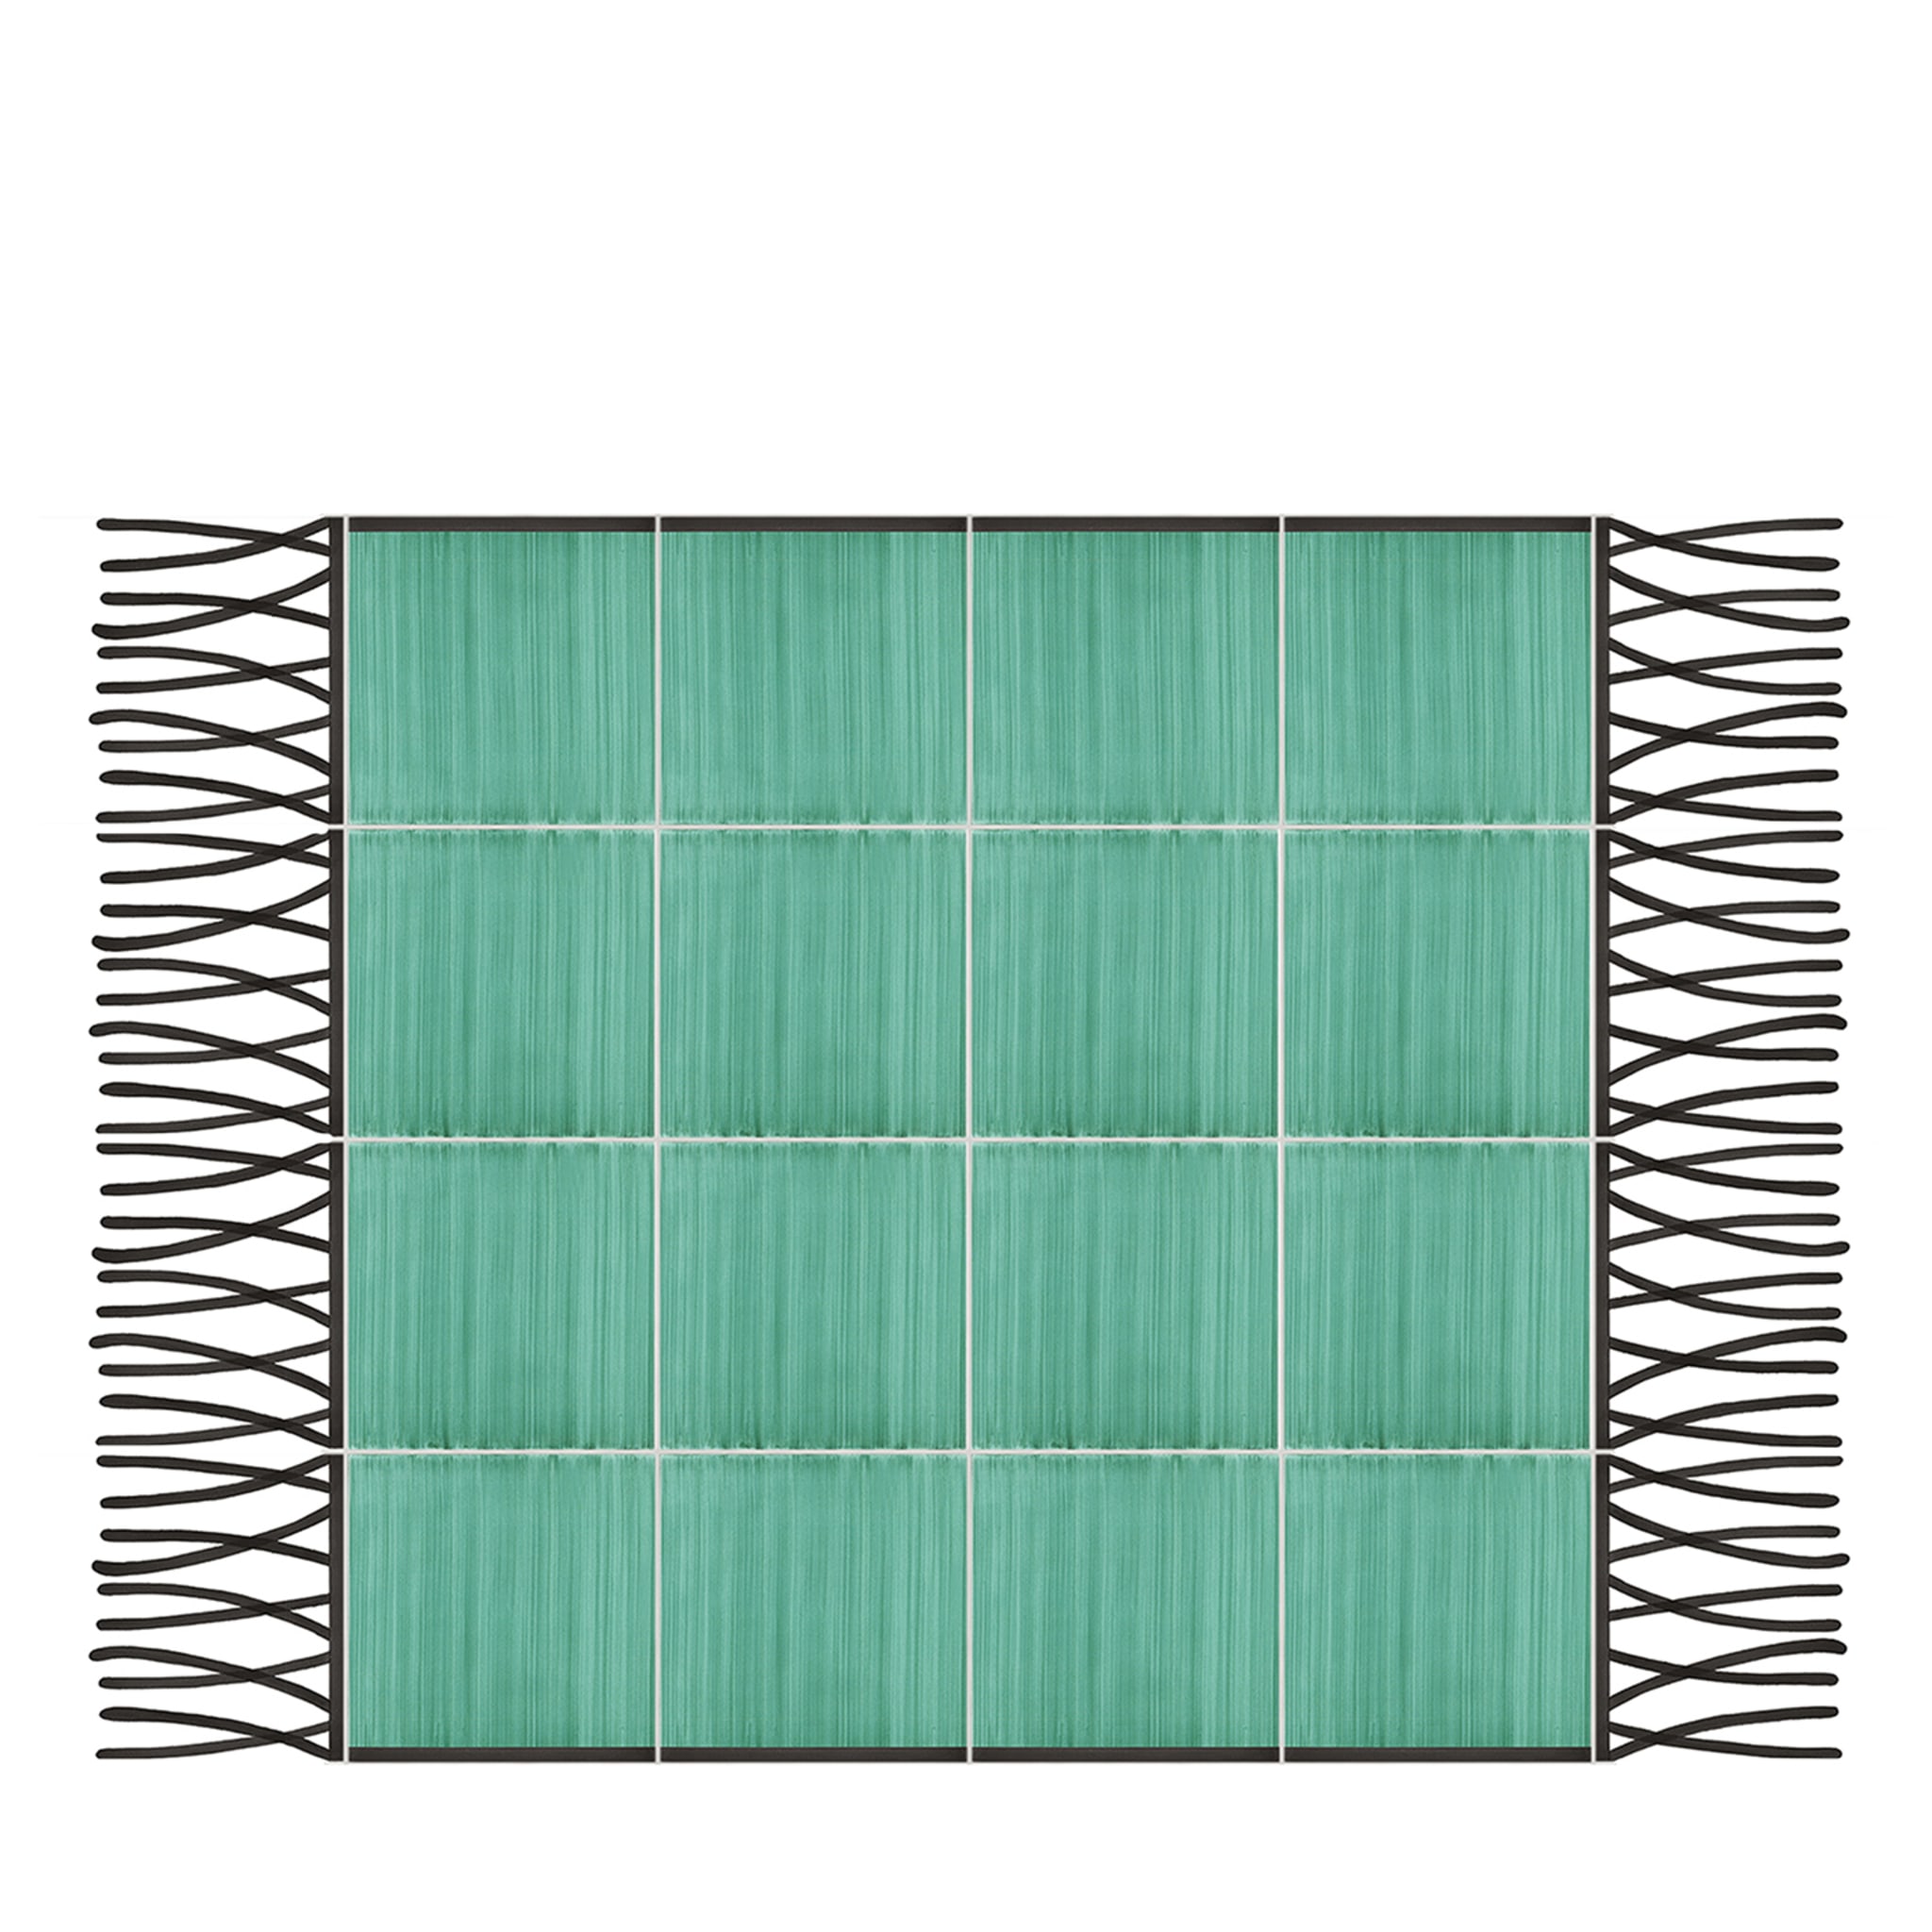 Alfombra Composición Cerámica Verde Total de Giuliano Andrea dell'Uva 120 X 80 con borde negro - Vista principal